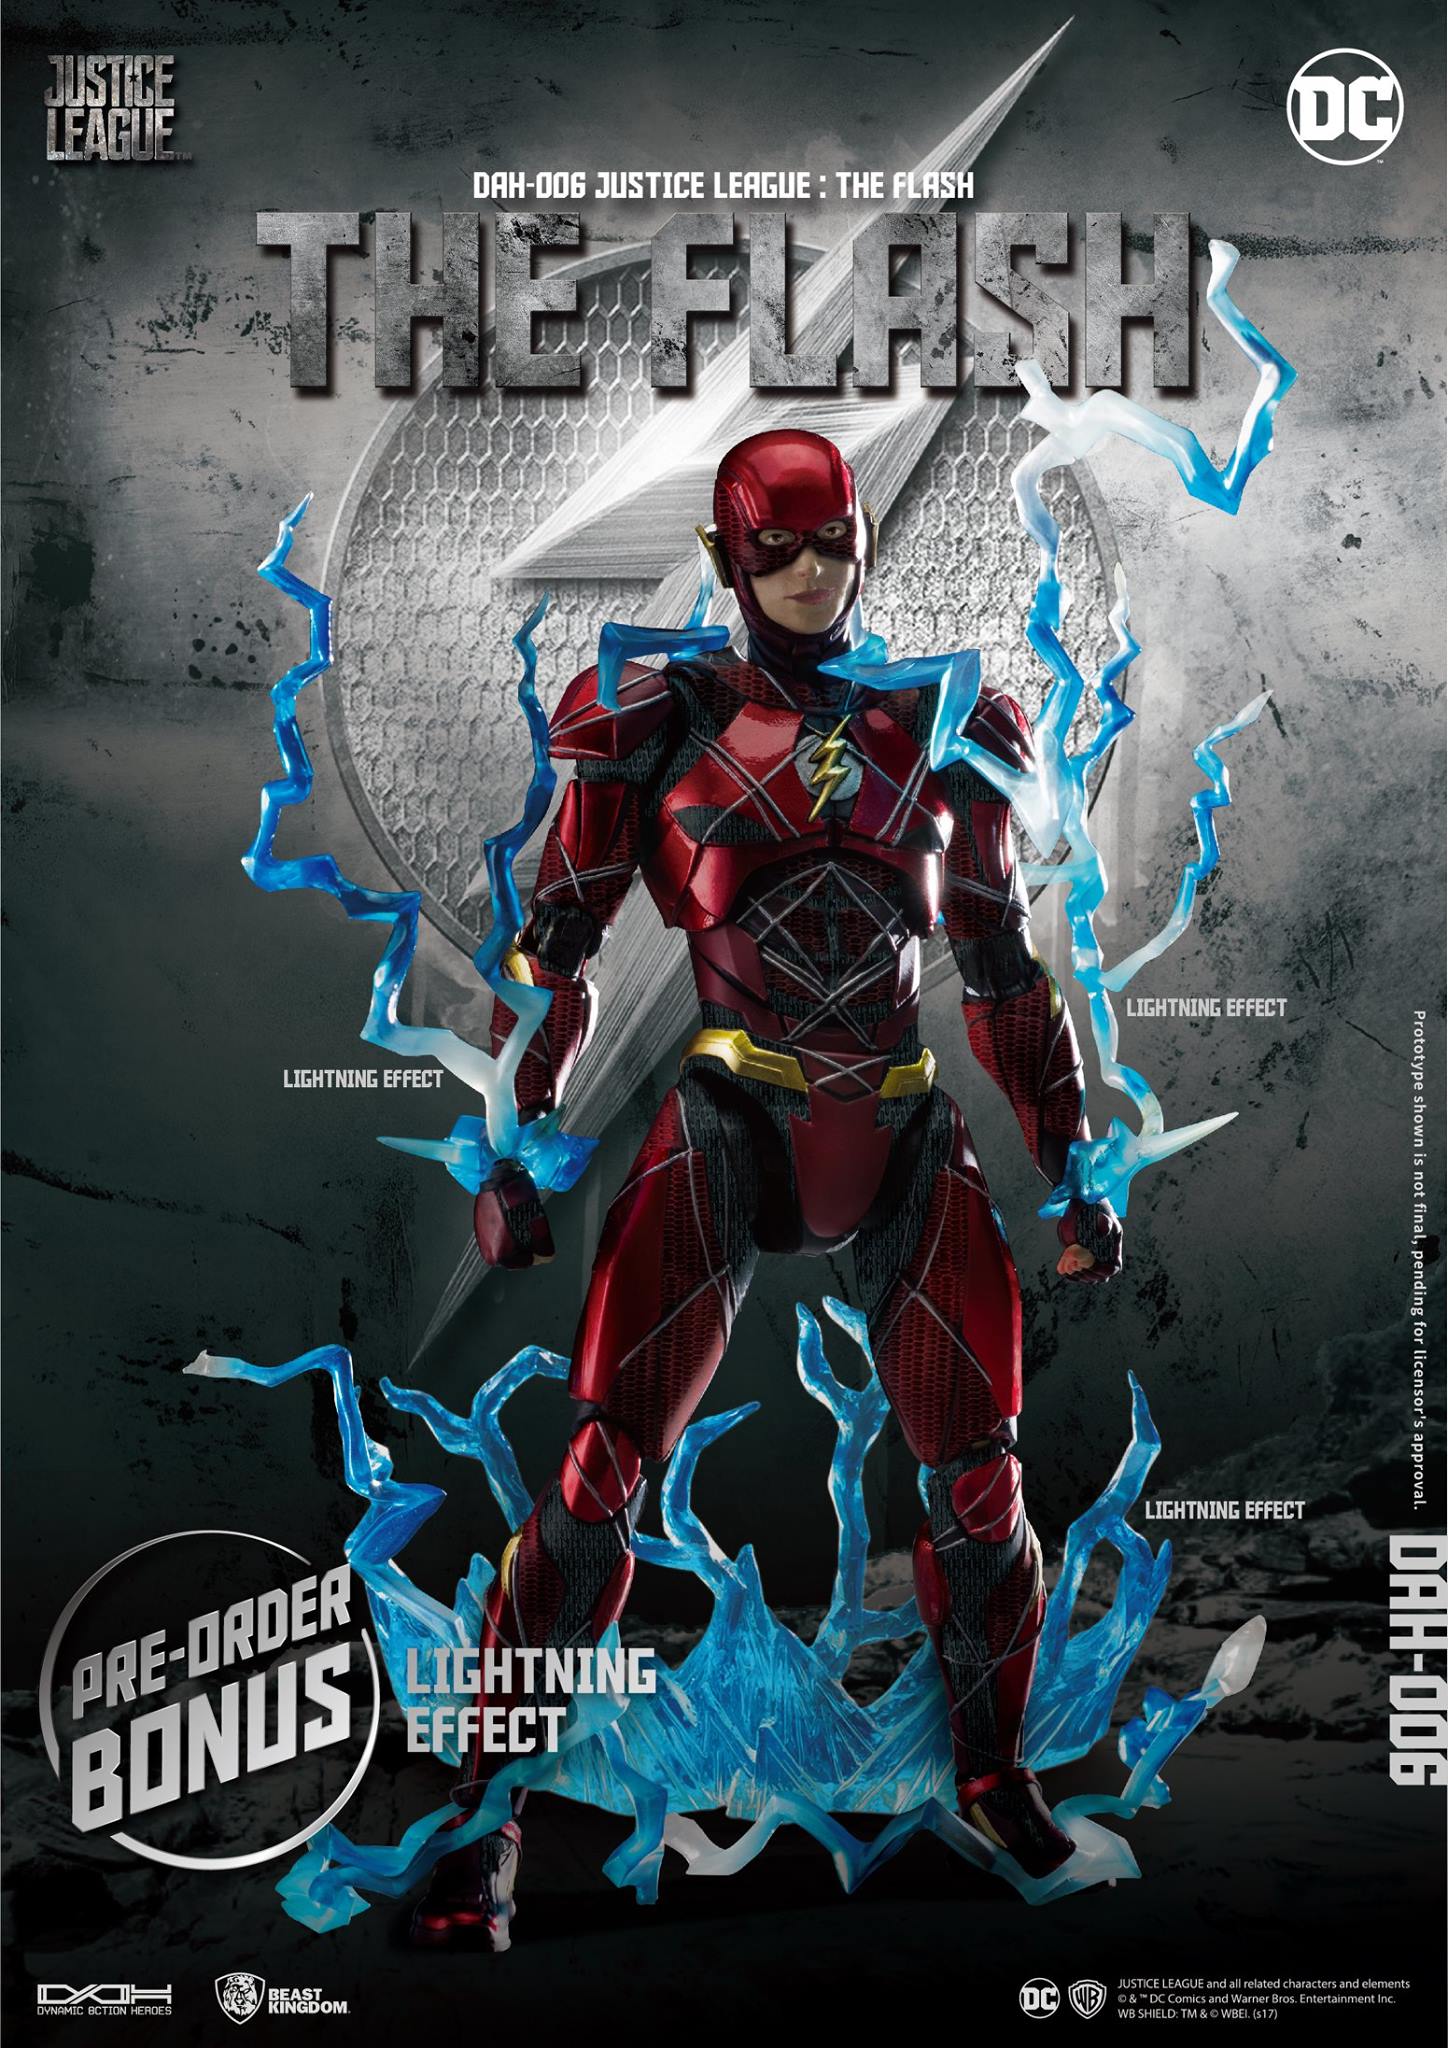 DAH-Justice-League-The-Flash-005